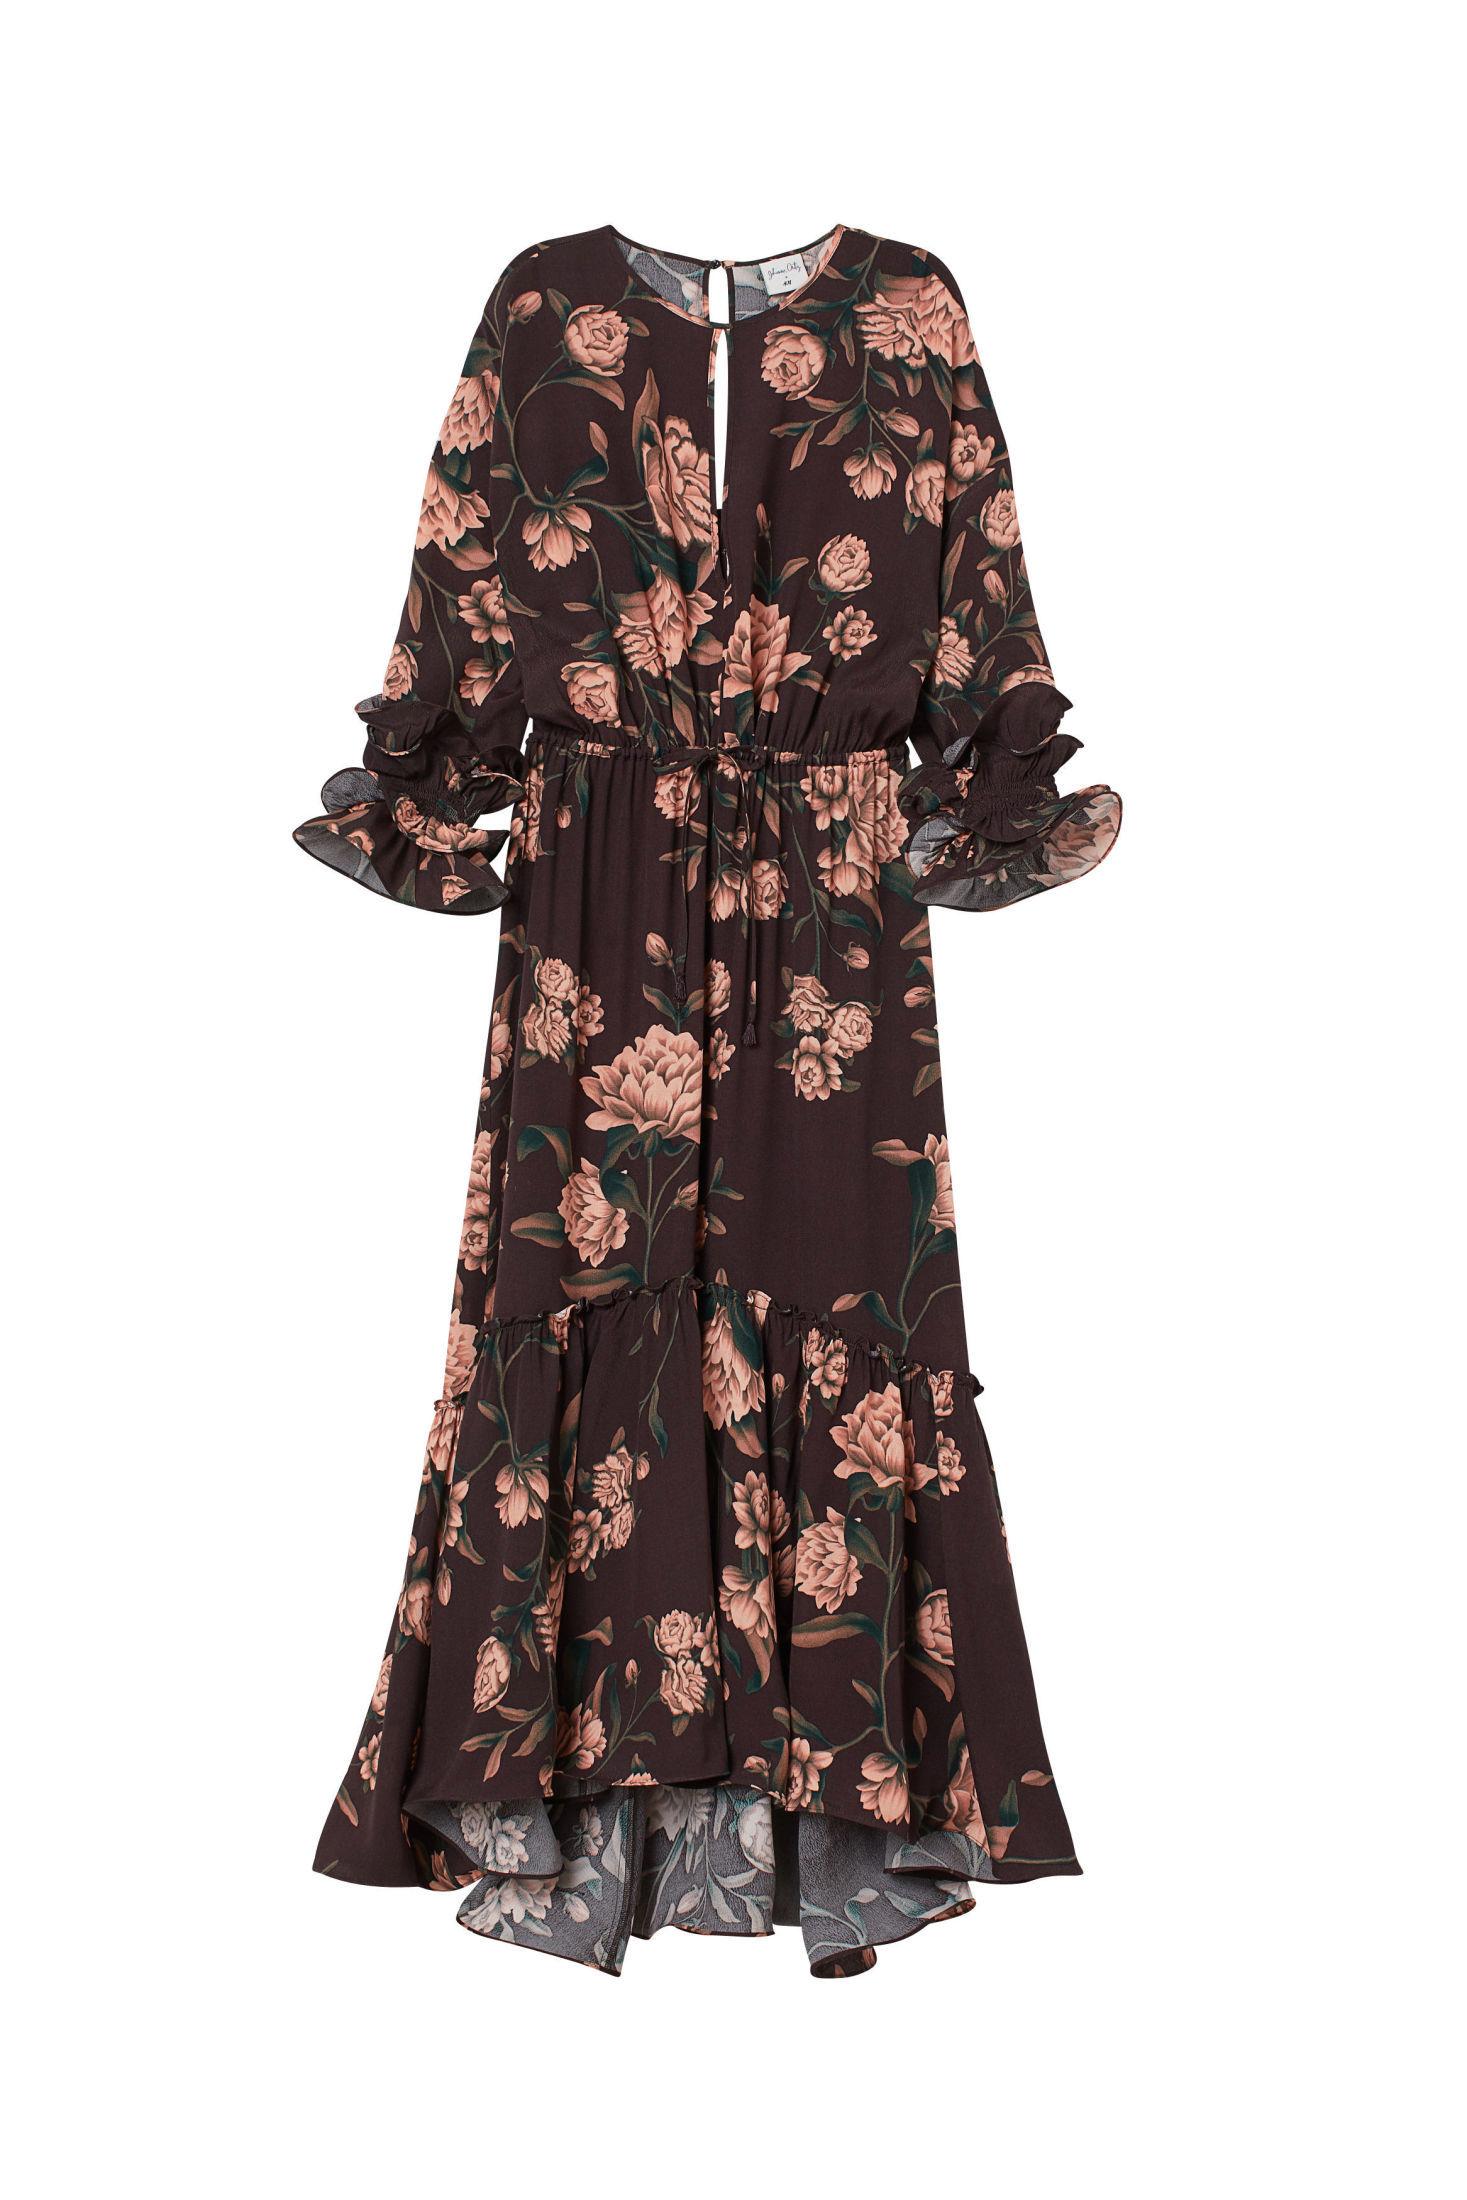 MYSTISK ROMANSE: En av kjolene som blir sluppet først er denne i mørkt blomstermønster. Pris 499 kroner. Foto: Produsenten